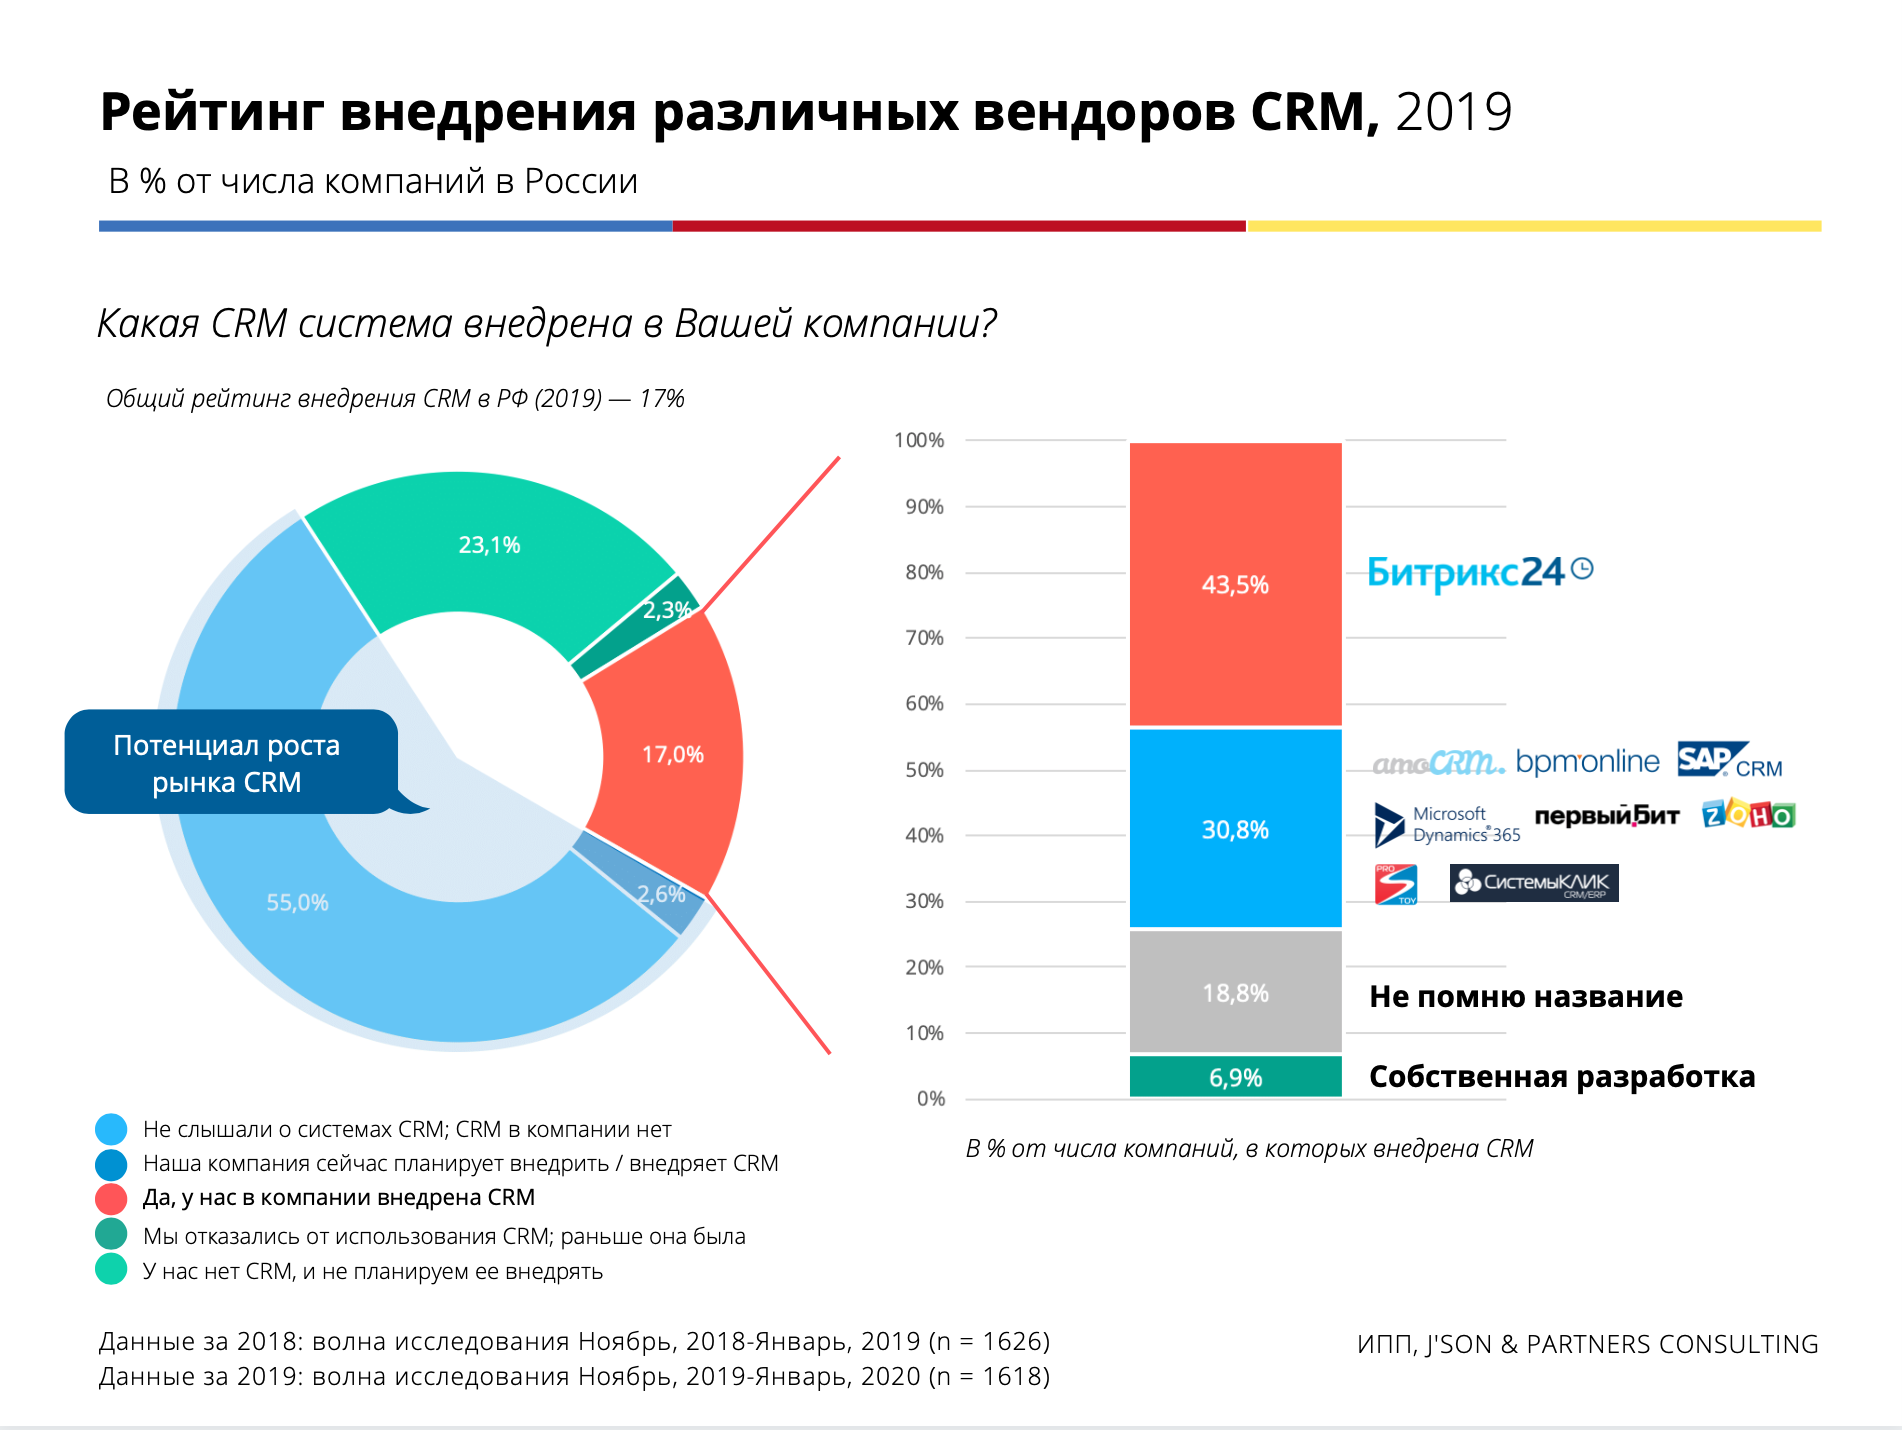 Crm companies. Рынок CRM систем в России 2020. Рынок CRM систем в России 2021. Рынок CRM систем в России 2022.